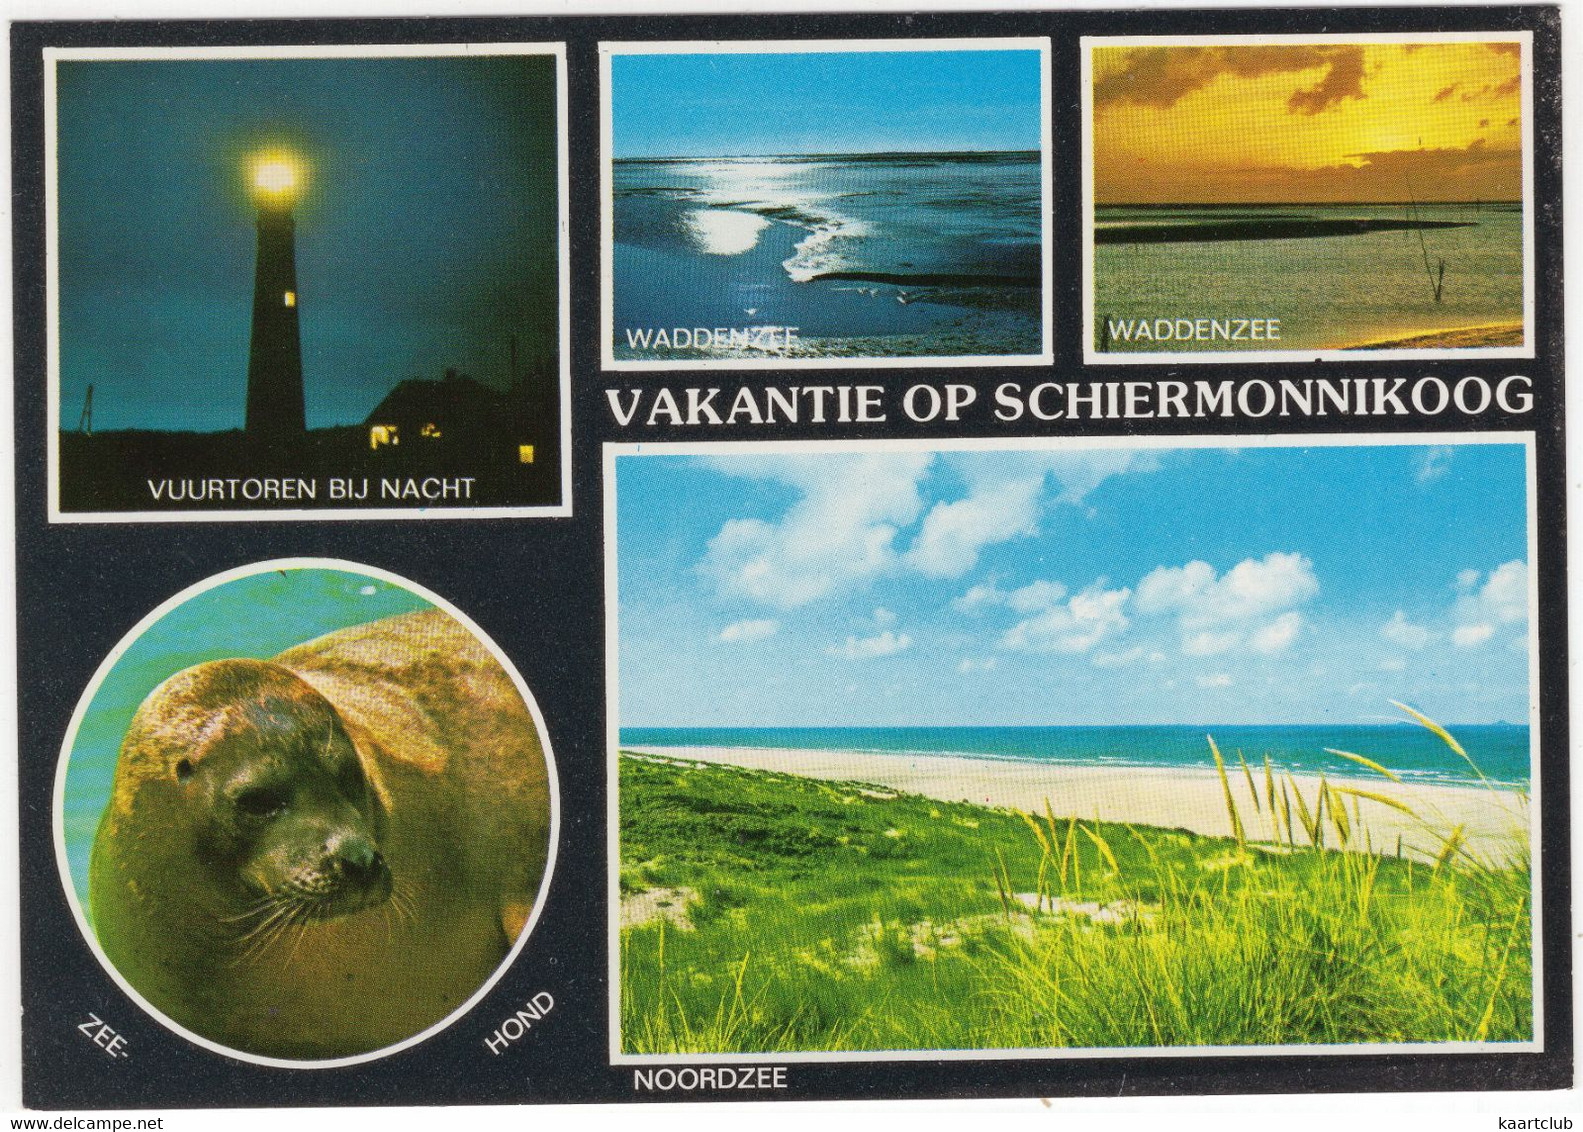 Vakantie Op Schiermonnikoog - O.a. Vuurtoren Bij Nacht, Zeehond - (Nederland/Holland) - L 5096 - Phare/Lighthouse - Schiermonnikoog